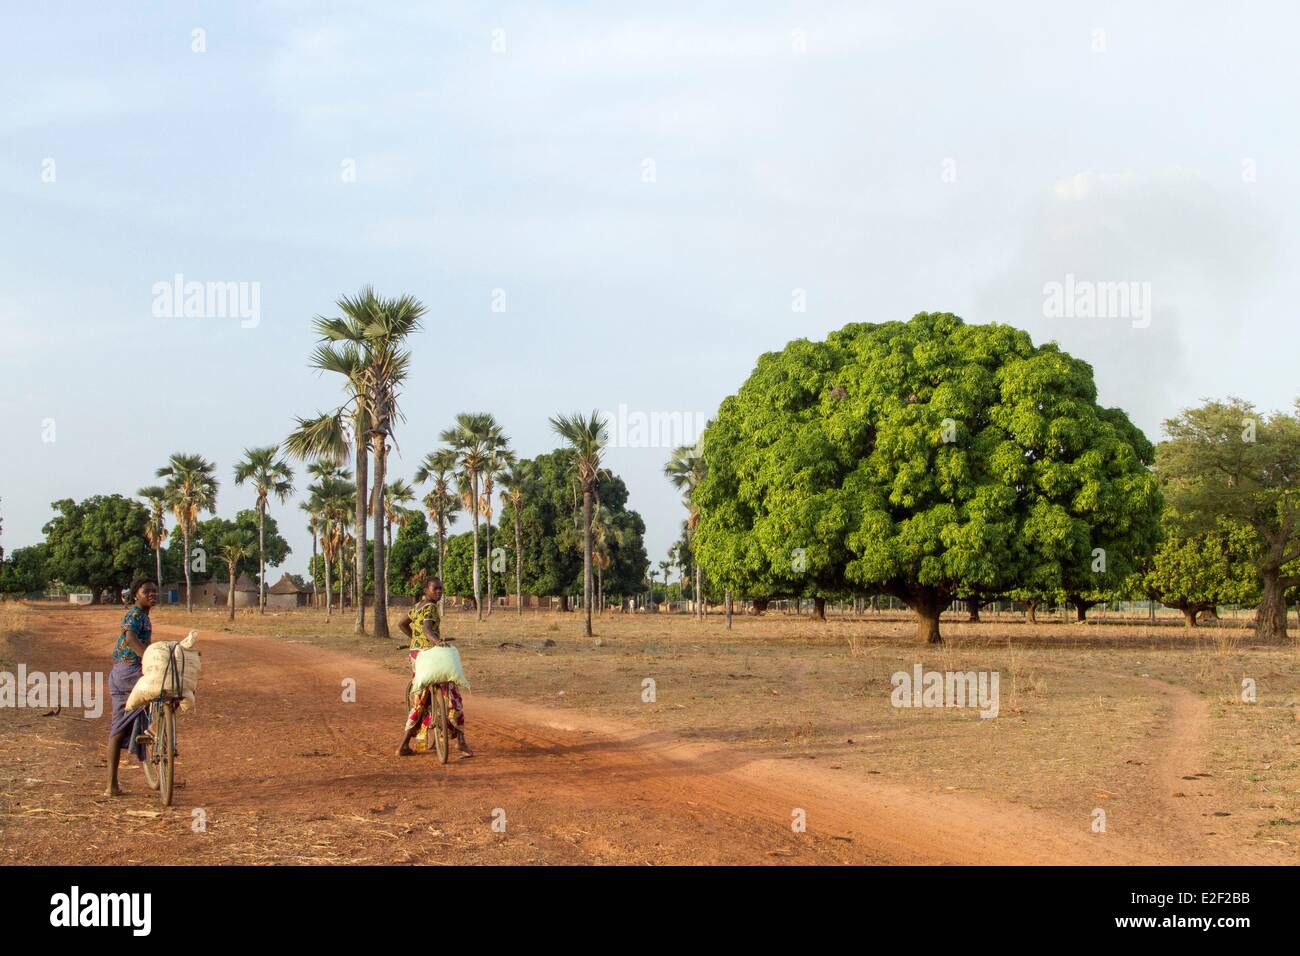 Le Burkina Faso, région sénoufo, manguier Banque D'Images